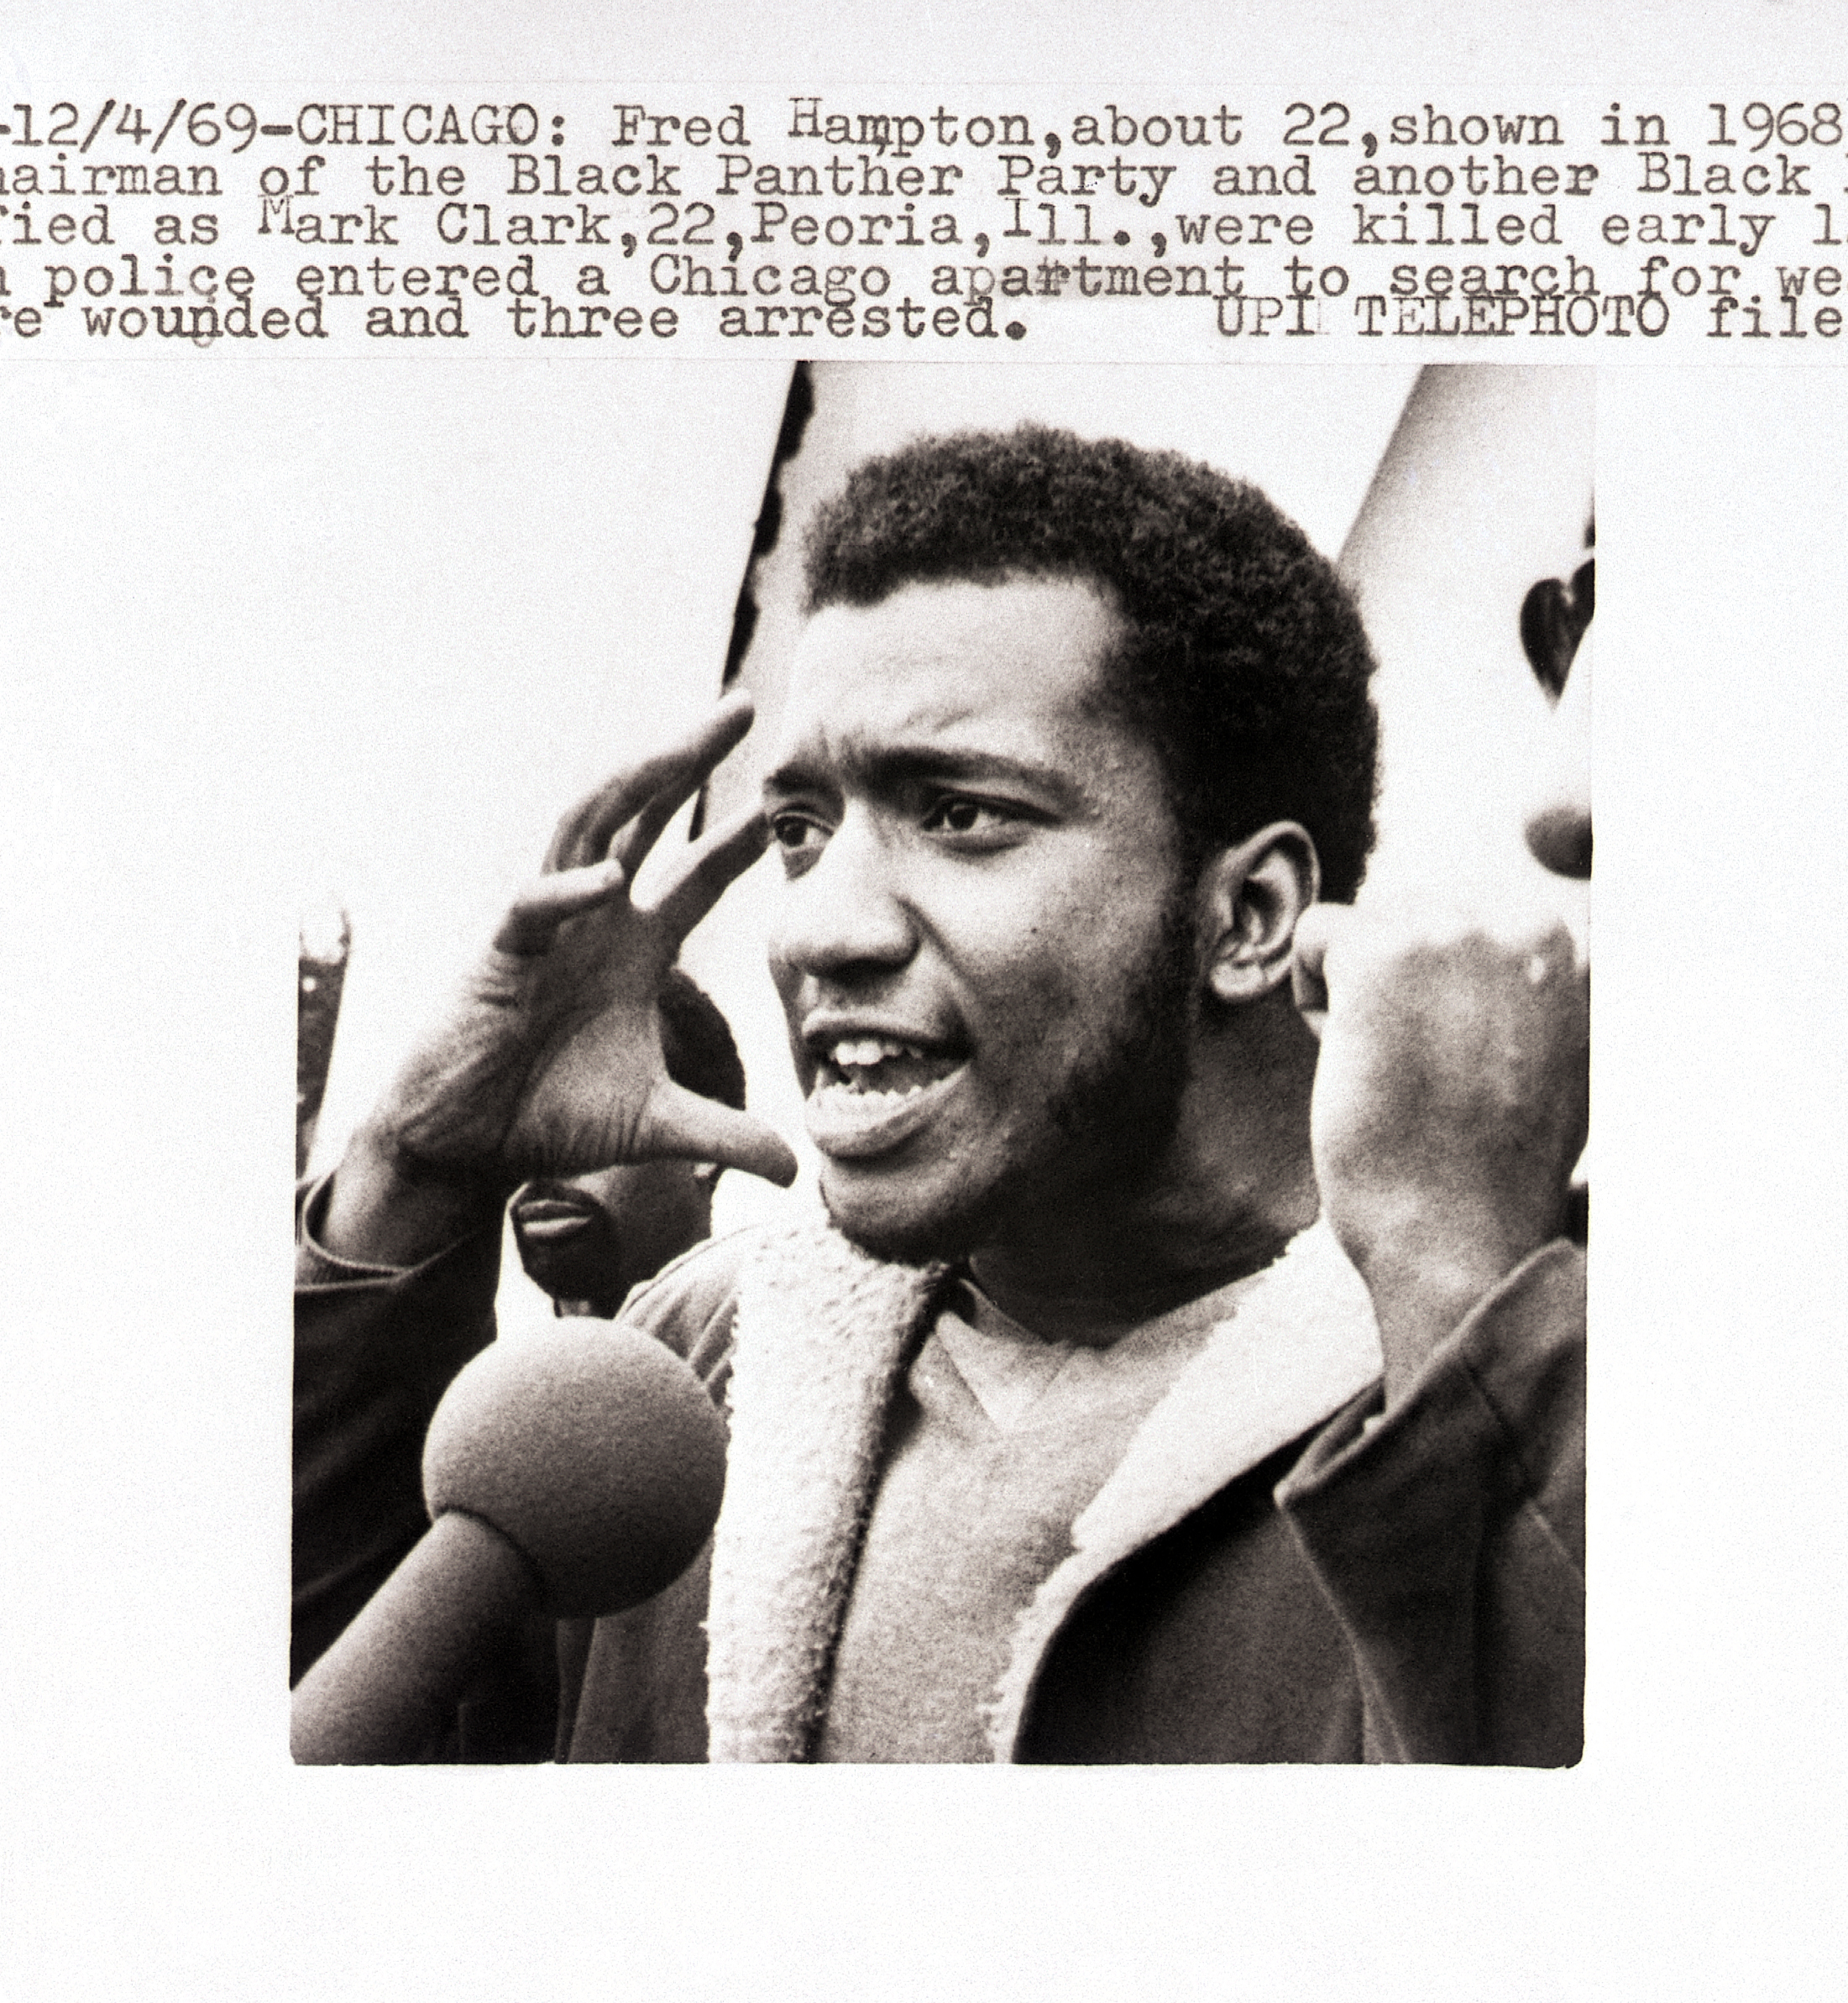 Fred Hampton en 1968 en el estado de Illinois ya como presidente de los Black Panther